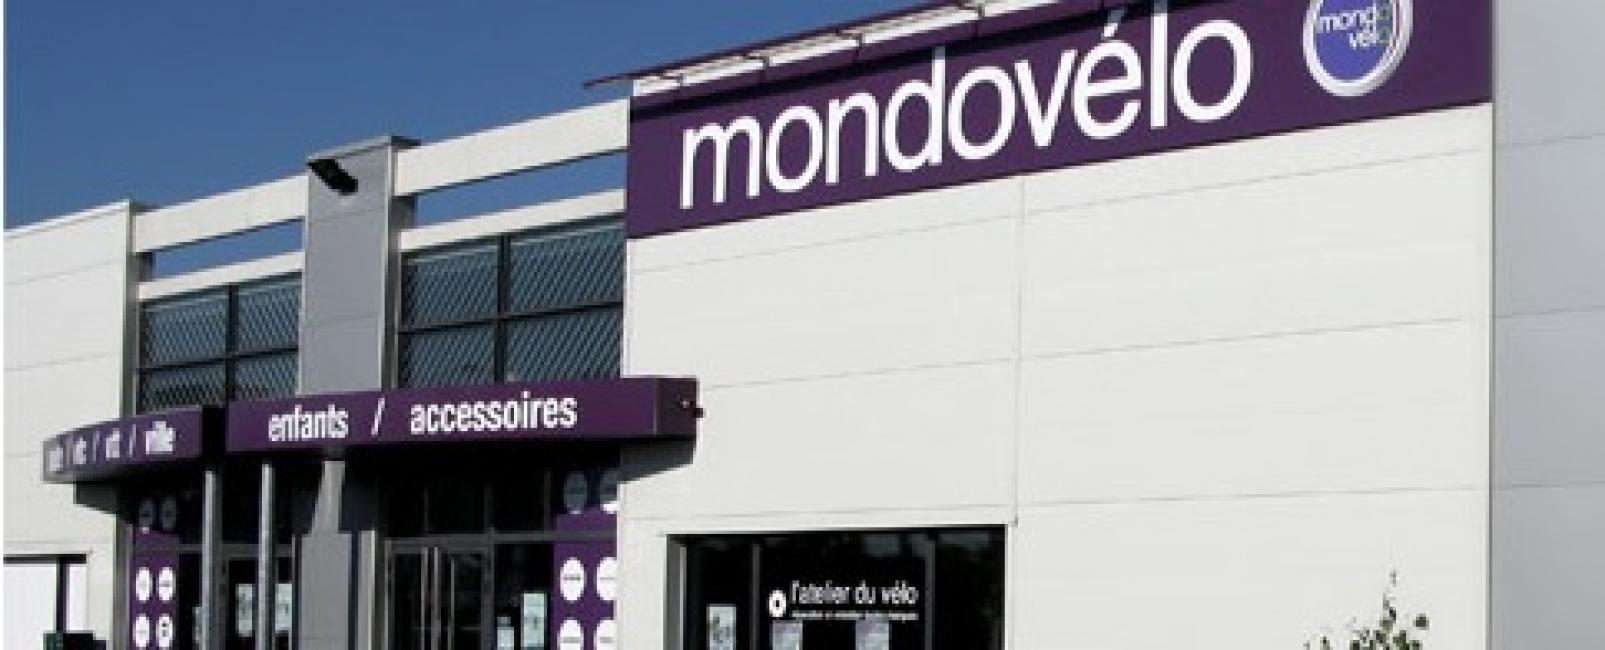 Les magasins Mondovélo profitent aussi du Vae